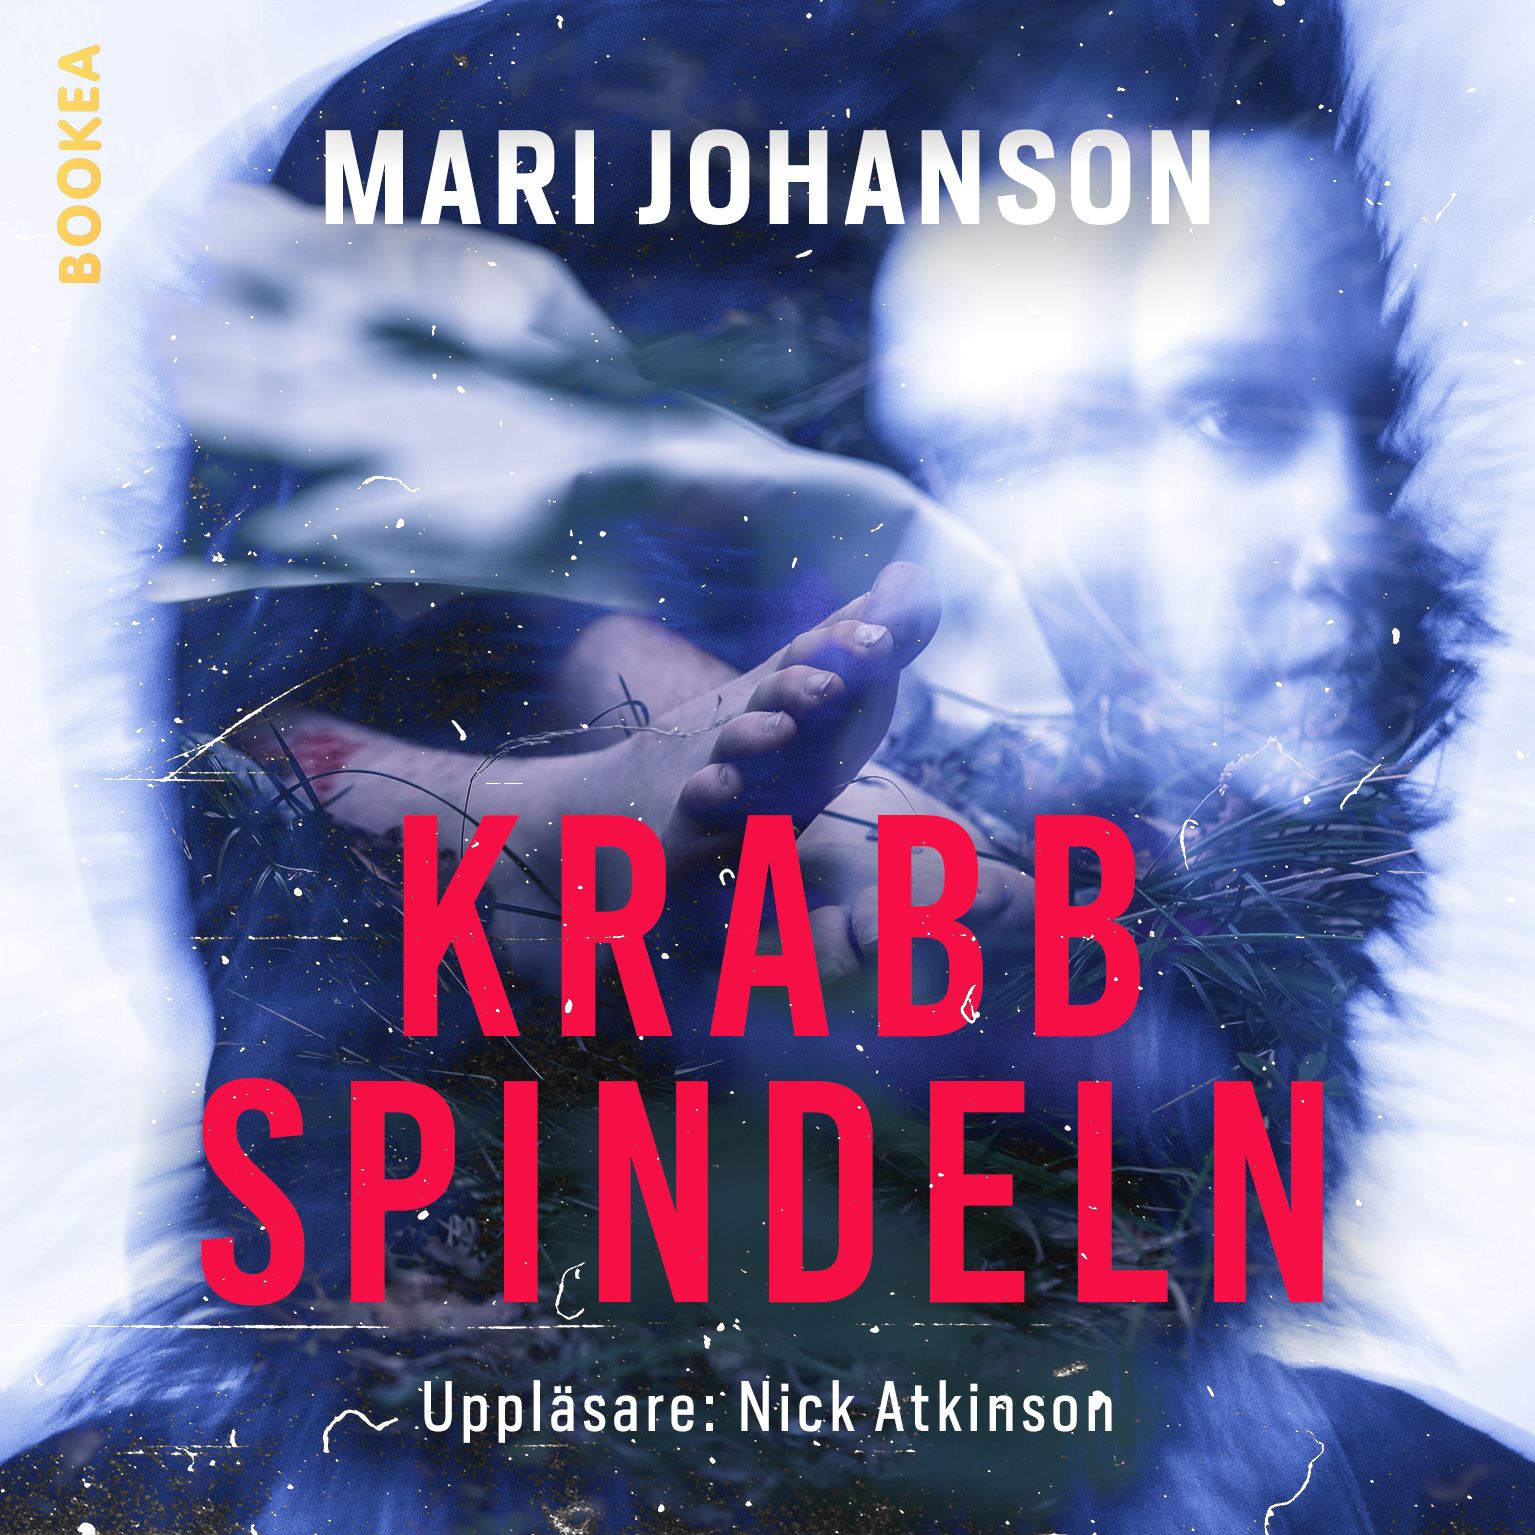 Krabbspindeln, e-bok av Mari Johanson